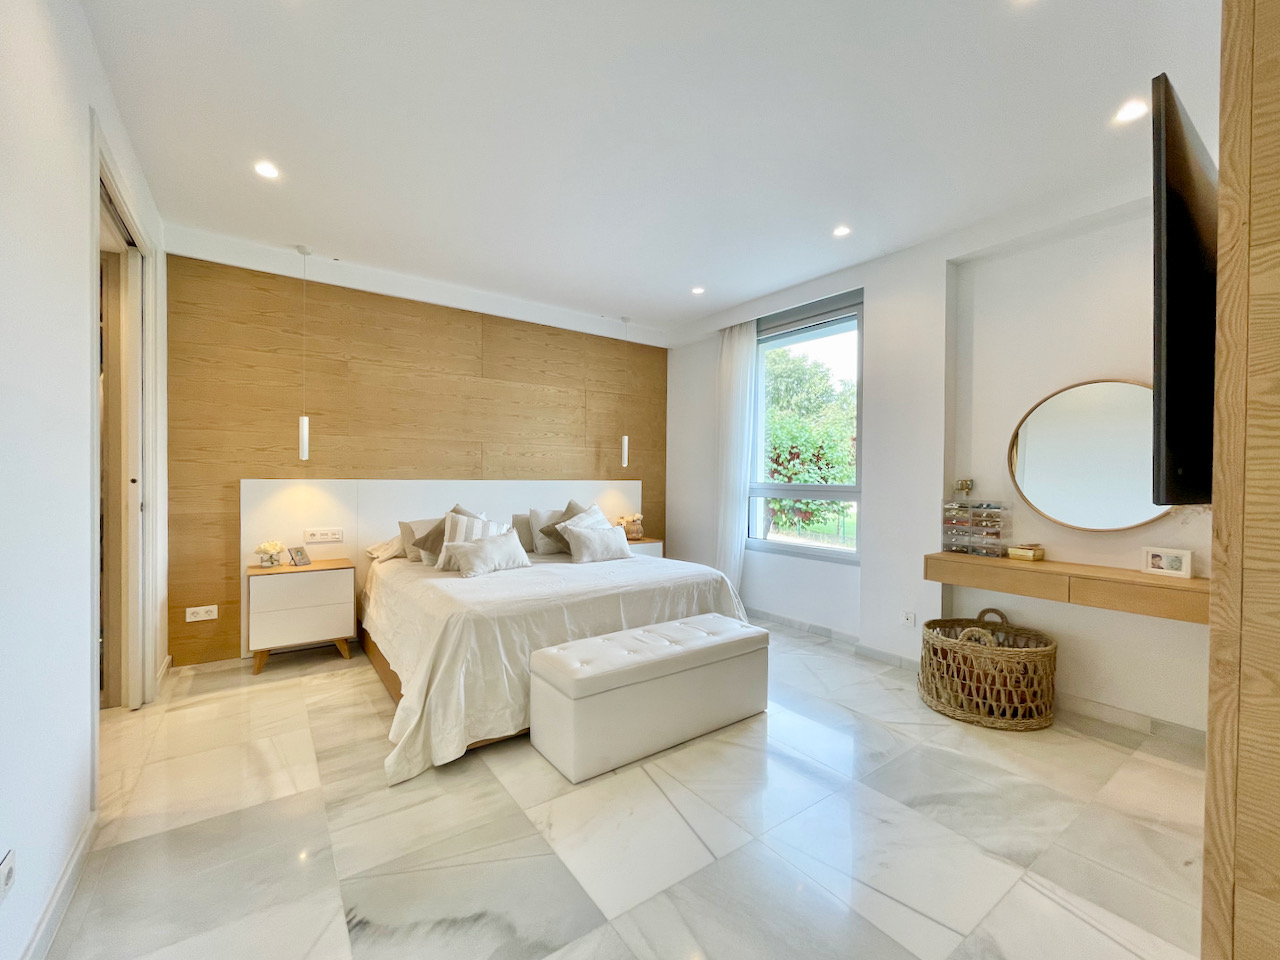 Schöne Wohnung in einer luxuriösen Wohnanlage in Son Quint, Palma.